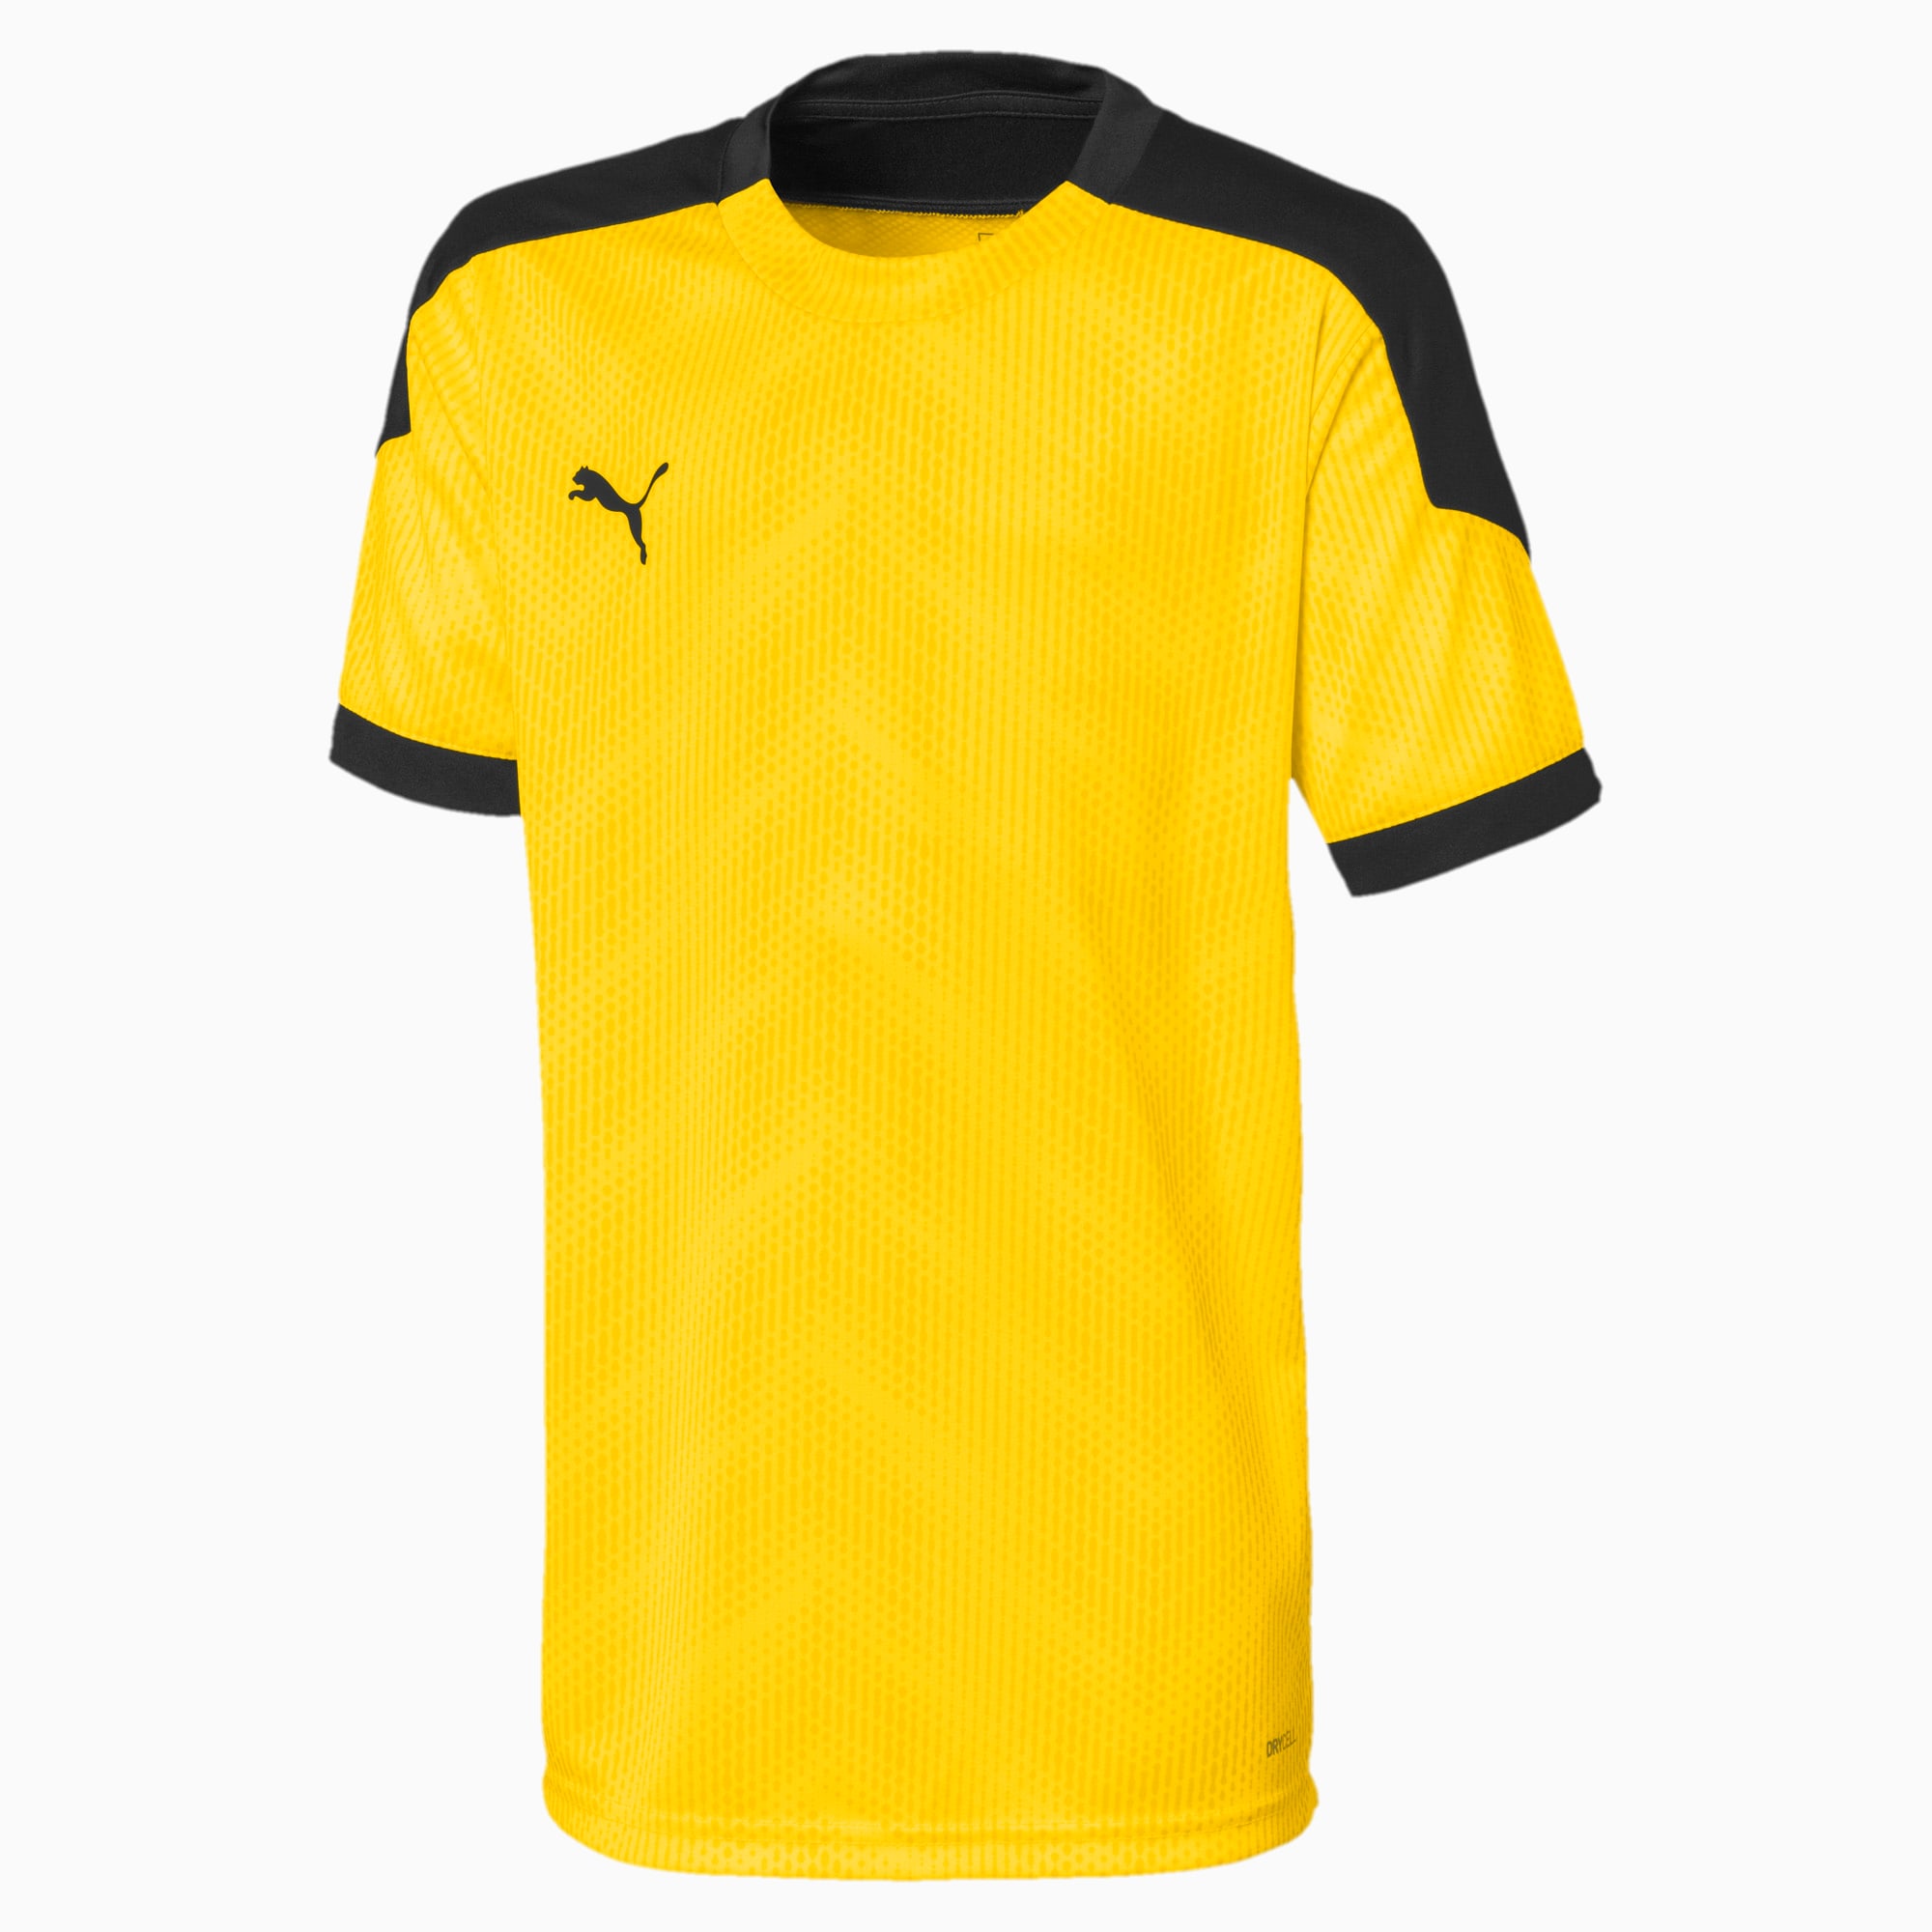 Image of PUMA ftblNXT Graphic Kinder Fußball T-Shirt | Mit Aucun | Gelb/Schwarz | Größe: 176